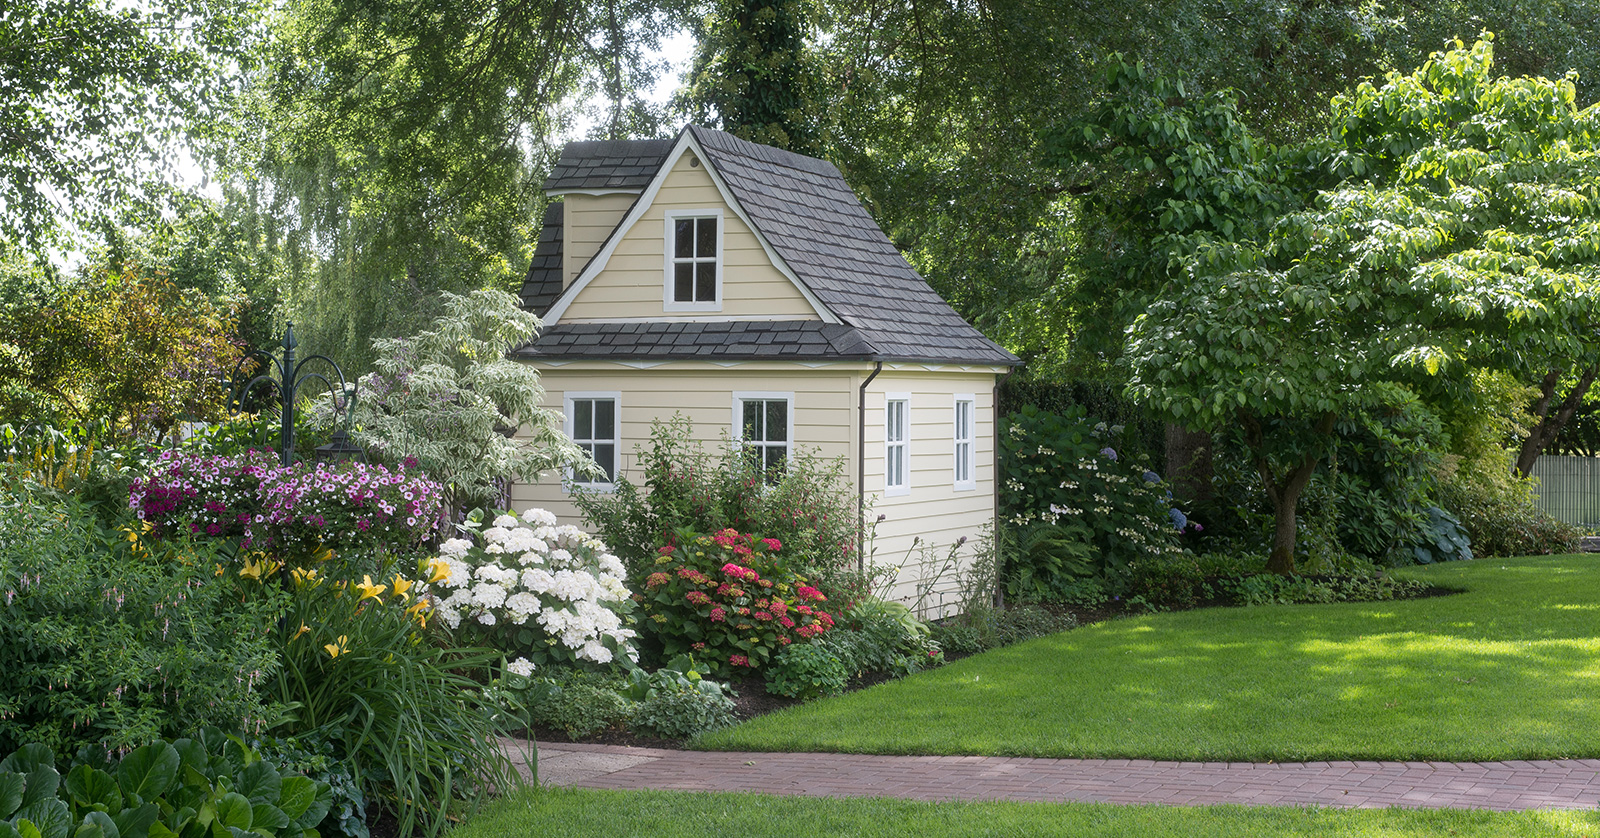 Small, cozy garden house